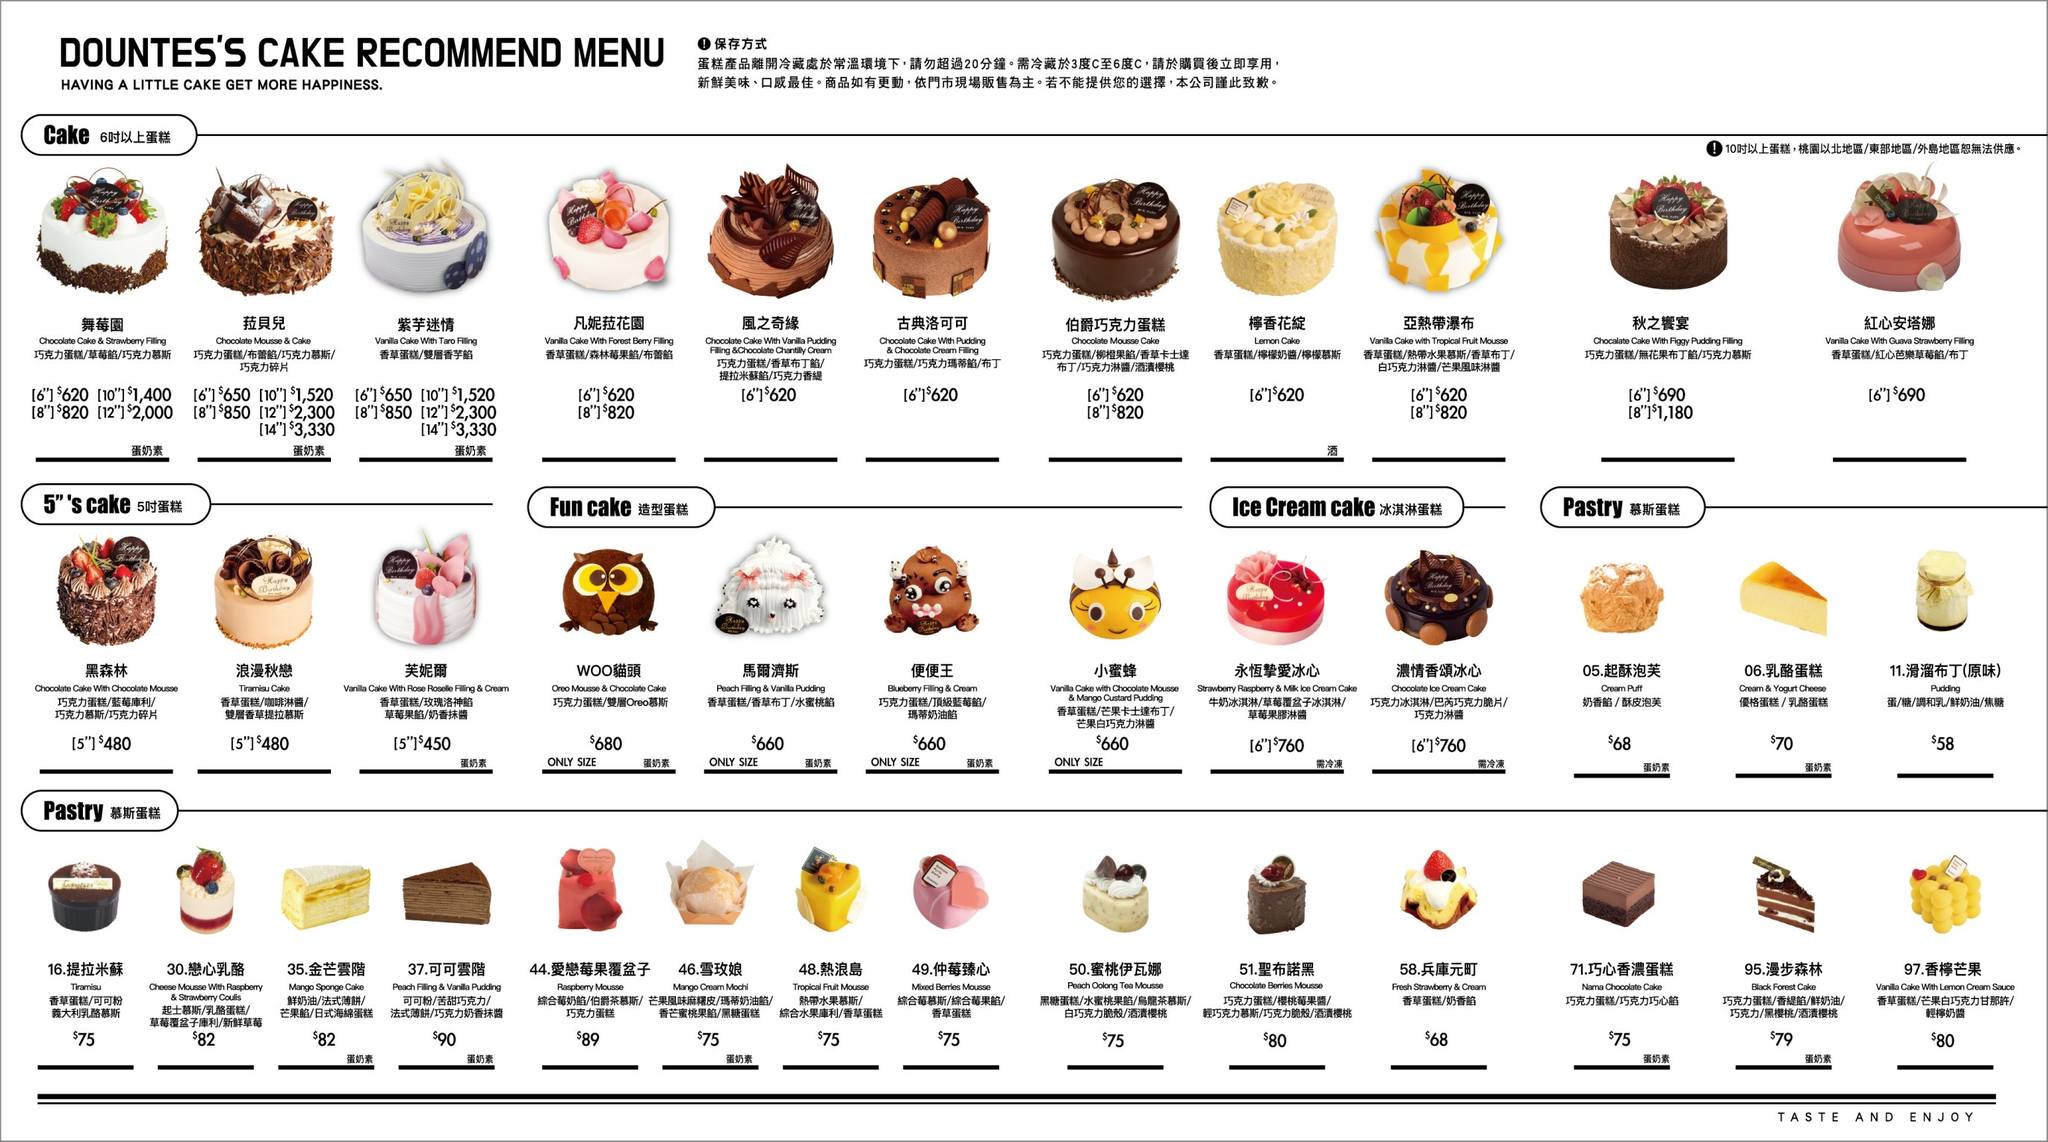 蛋糕店推薦|多那之咖啡蛋糕烘焙|蛋糕菜單、飲料菜單、全台門市據點 - yukiblog.tw